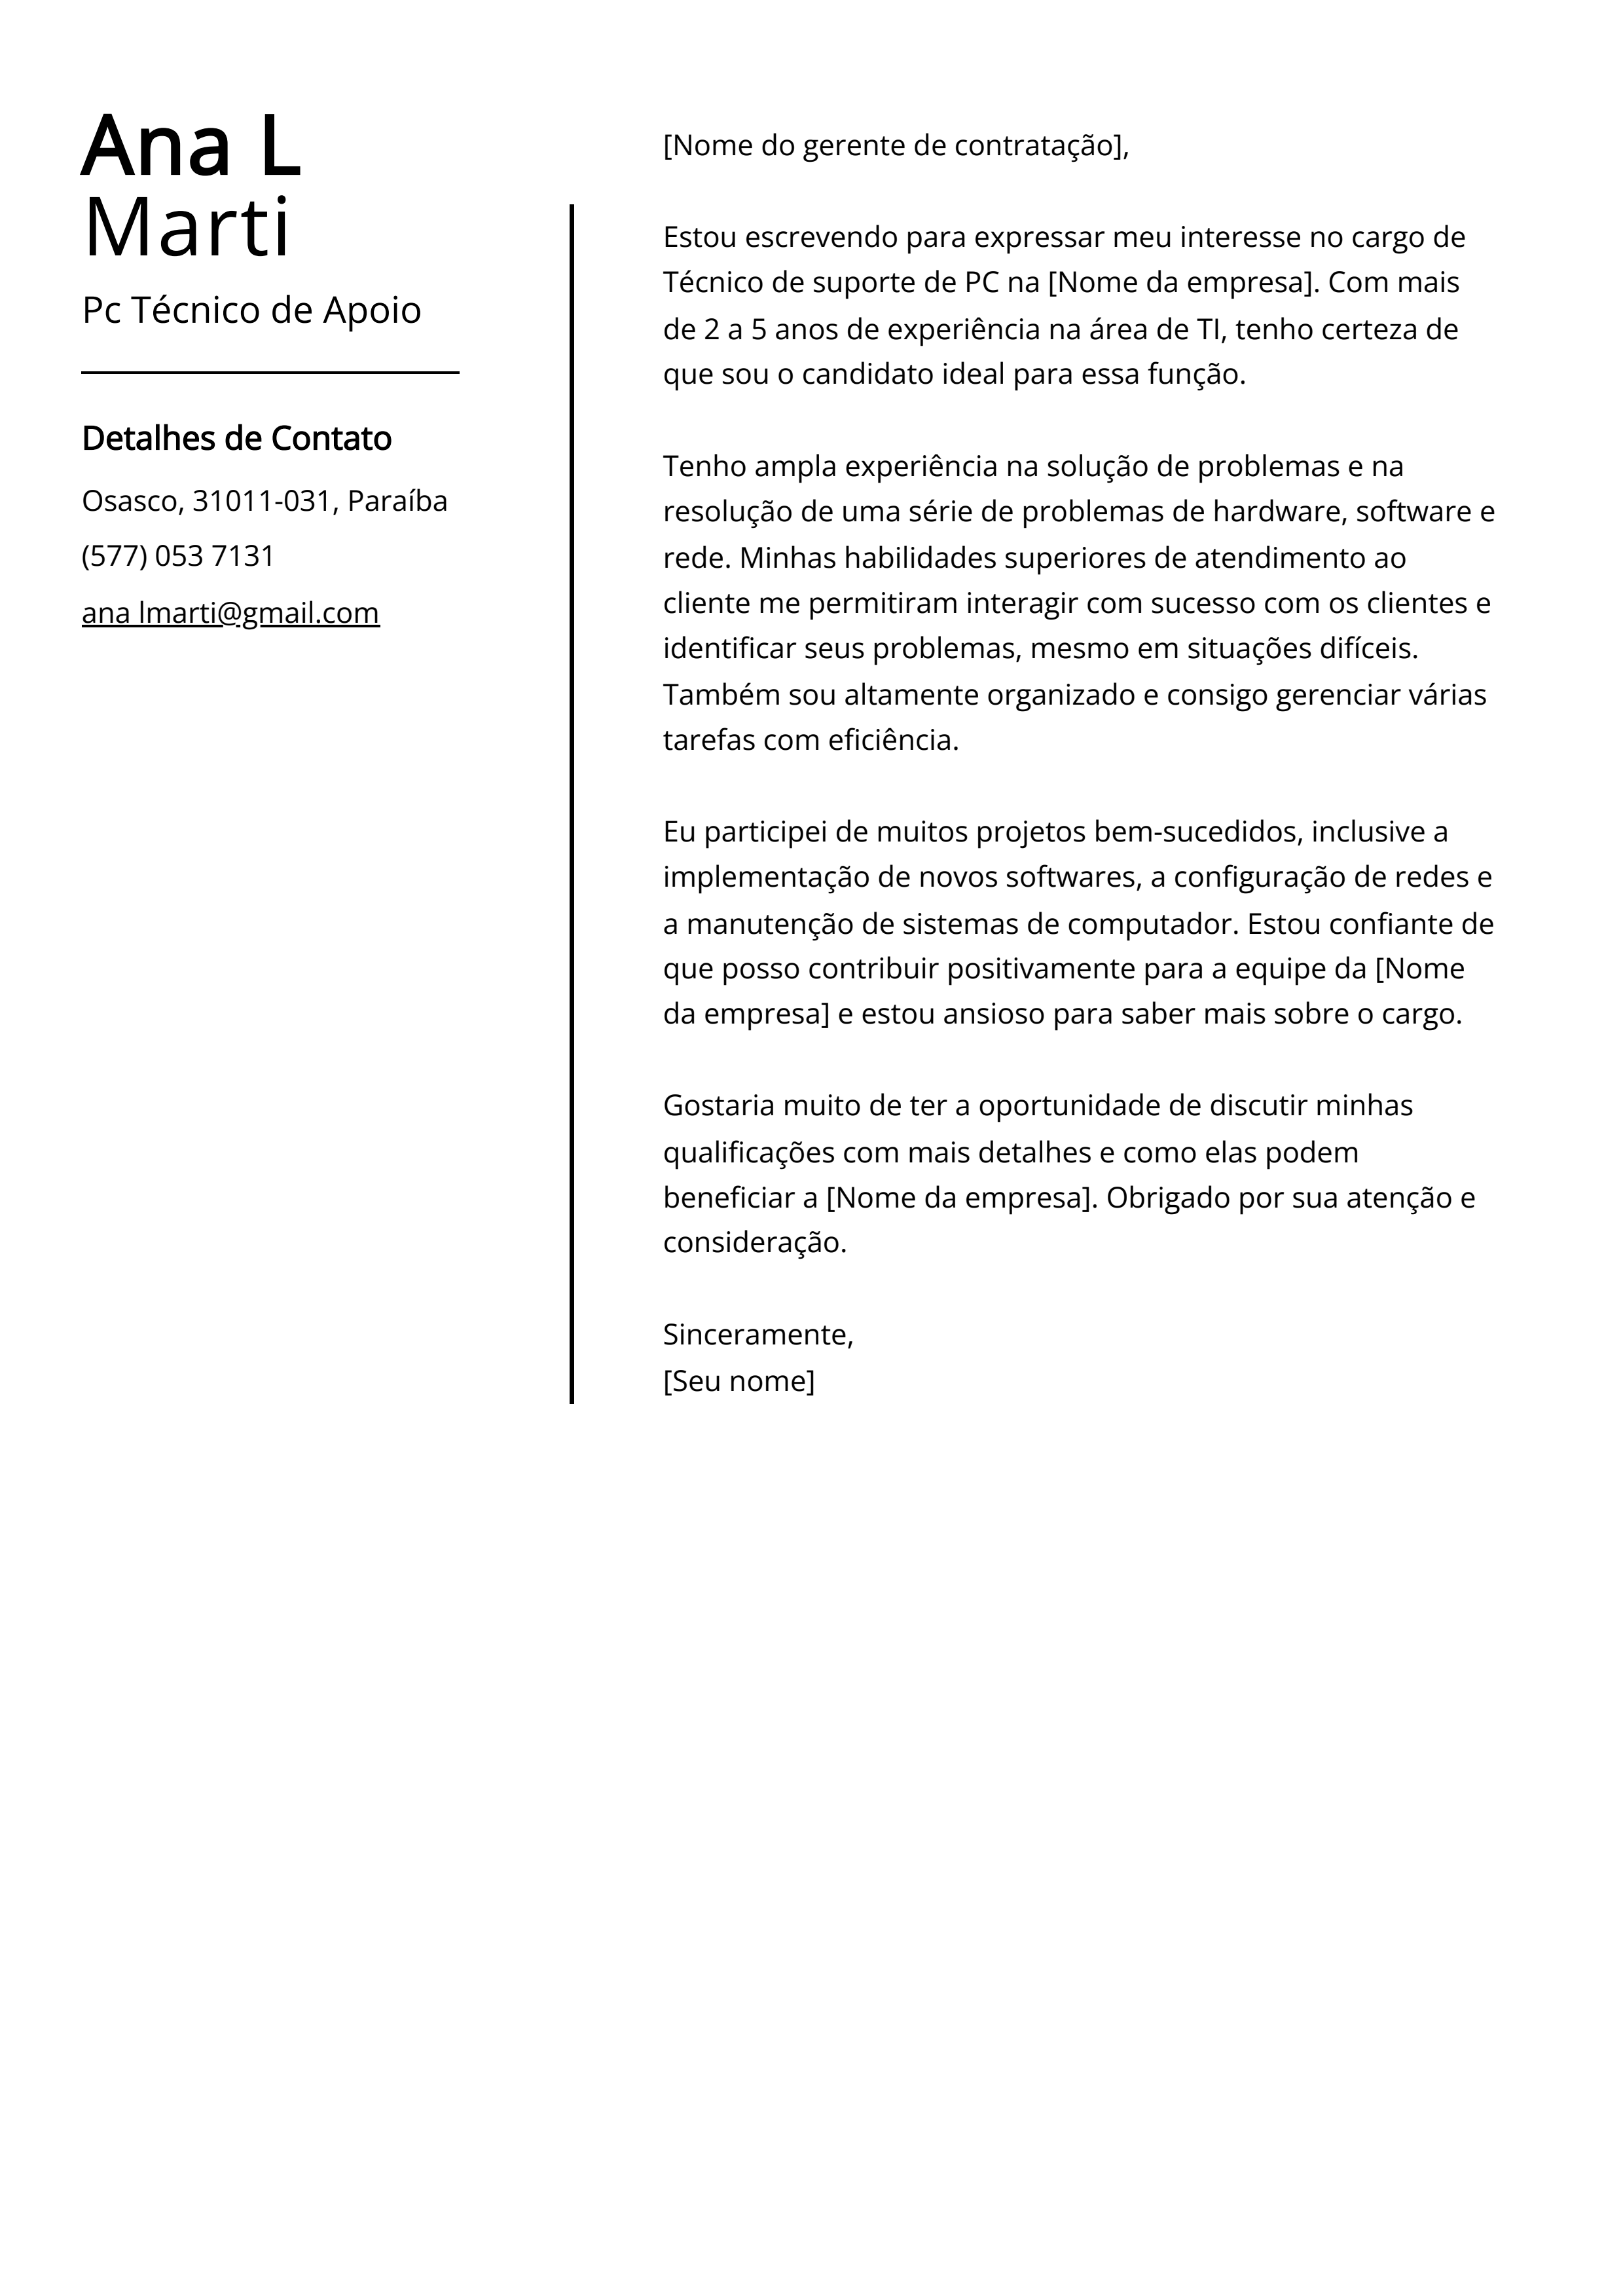 Exemplo de carta de apresentação de Pc Técnico de Apoio